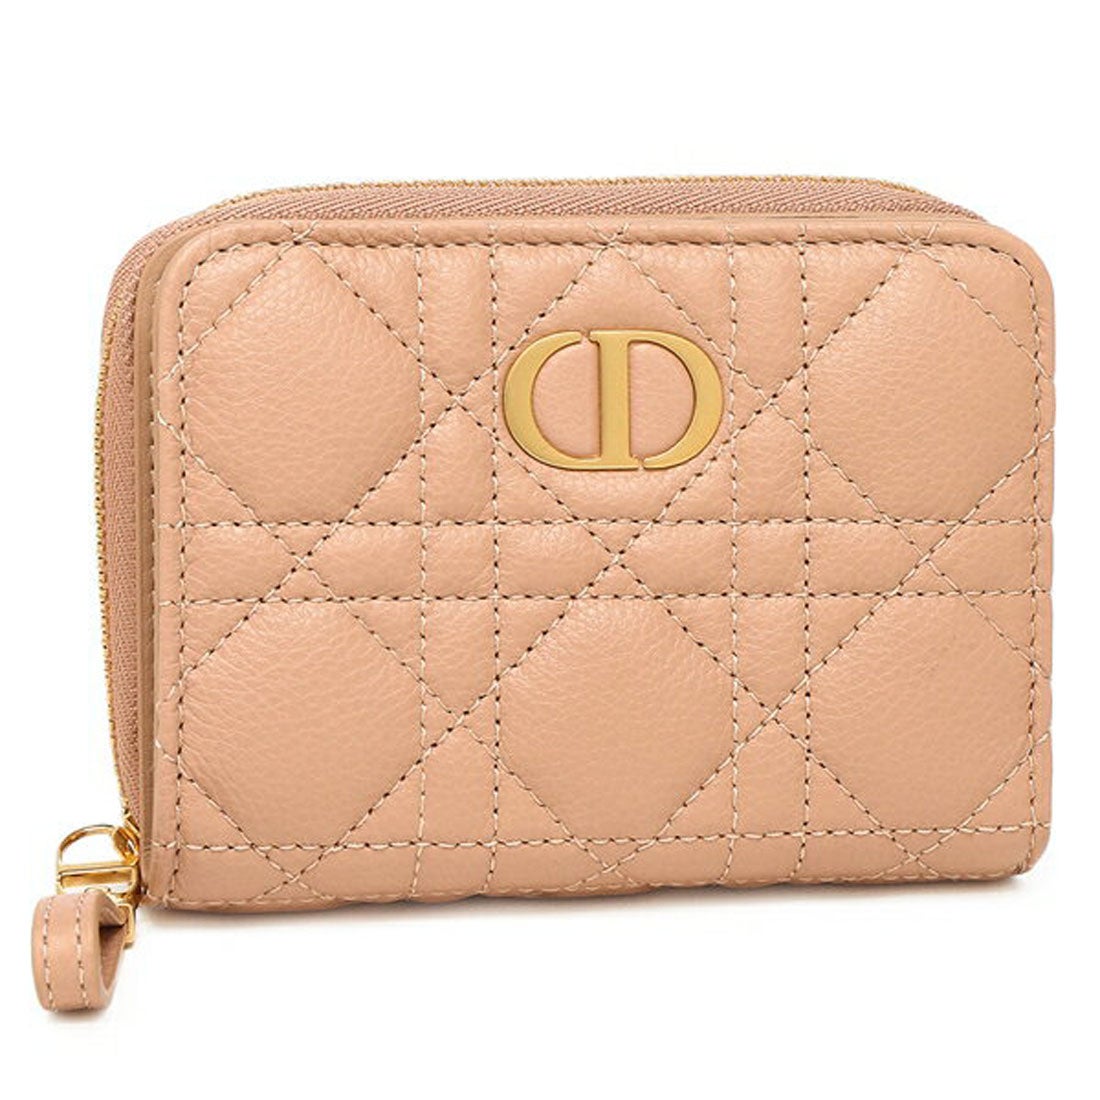 クリスチャンディオール Christian Dior 財布 レディース ブランド 三